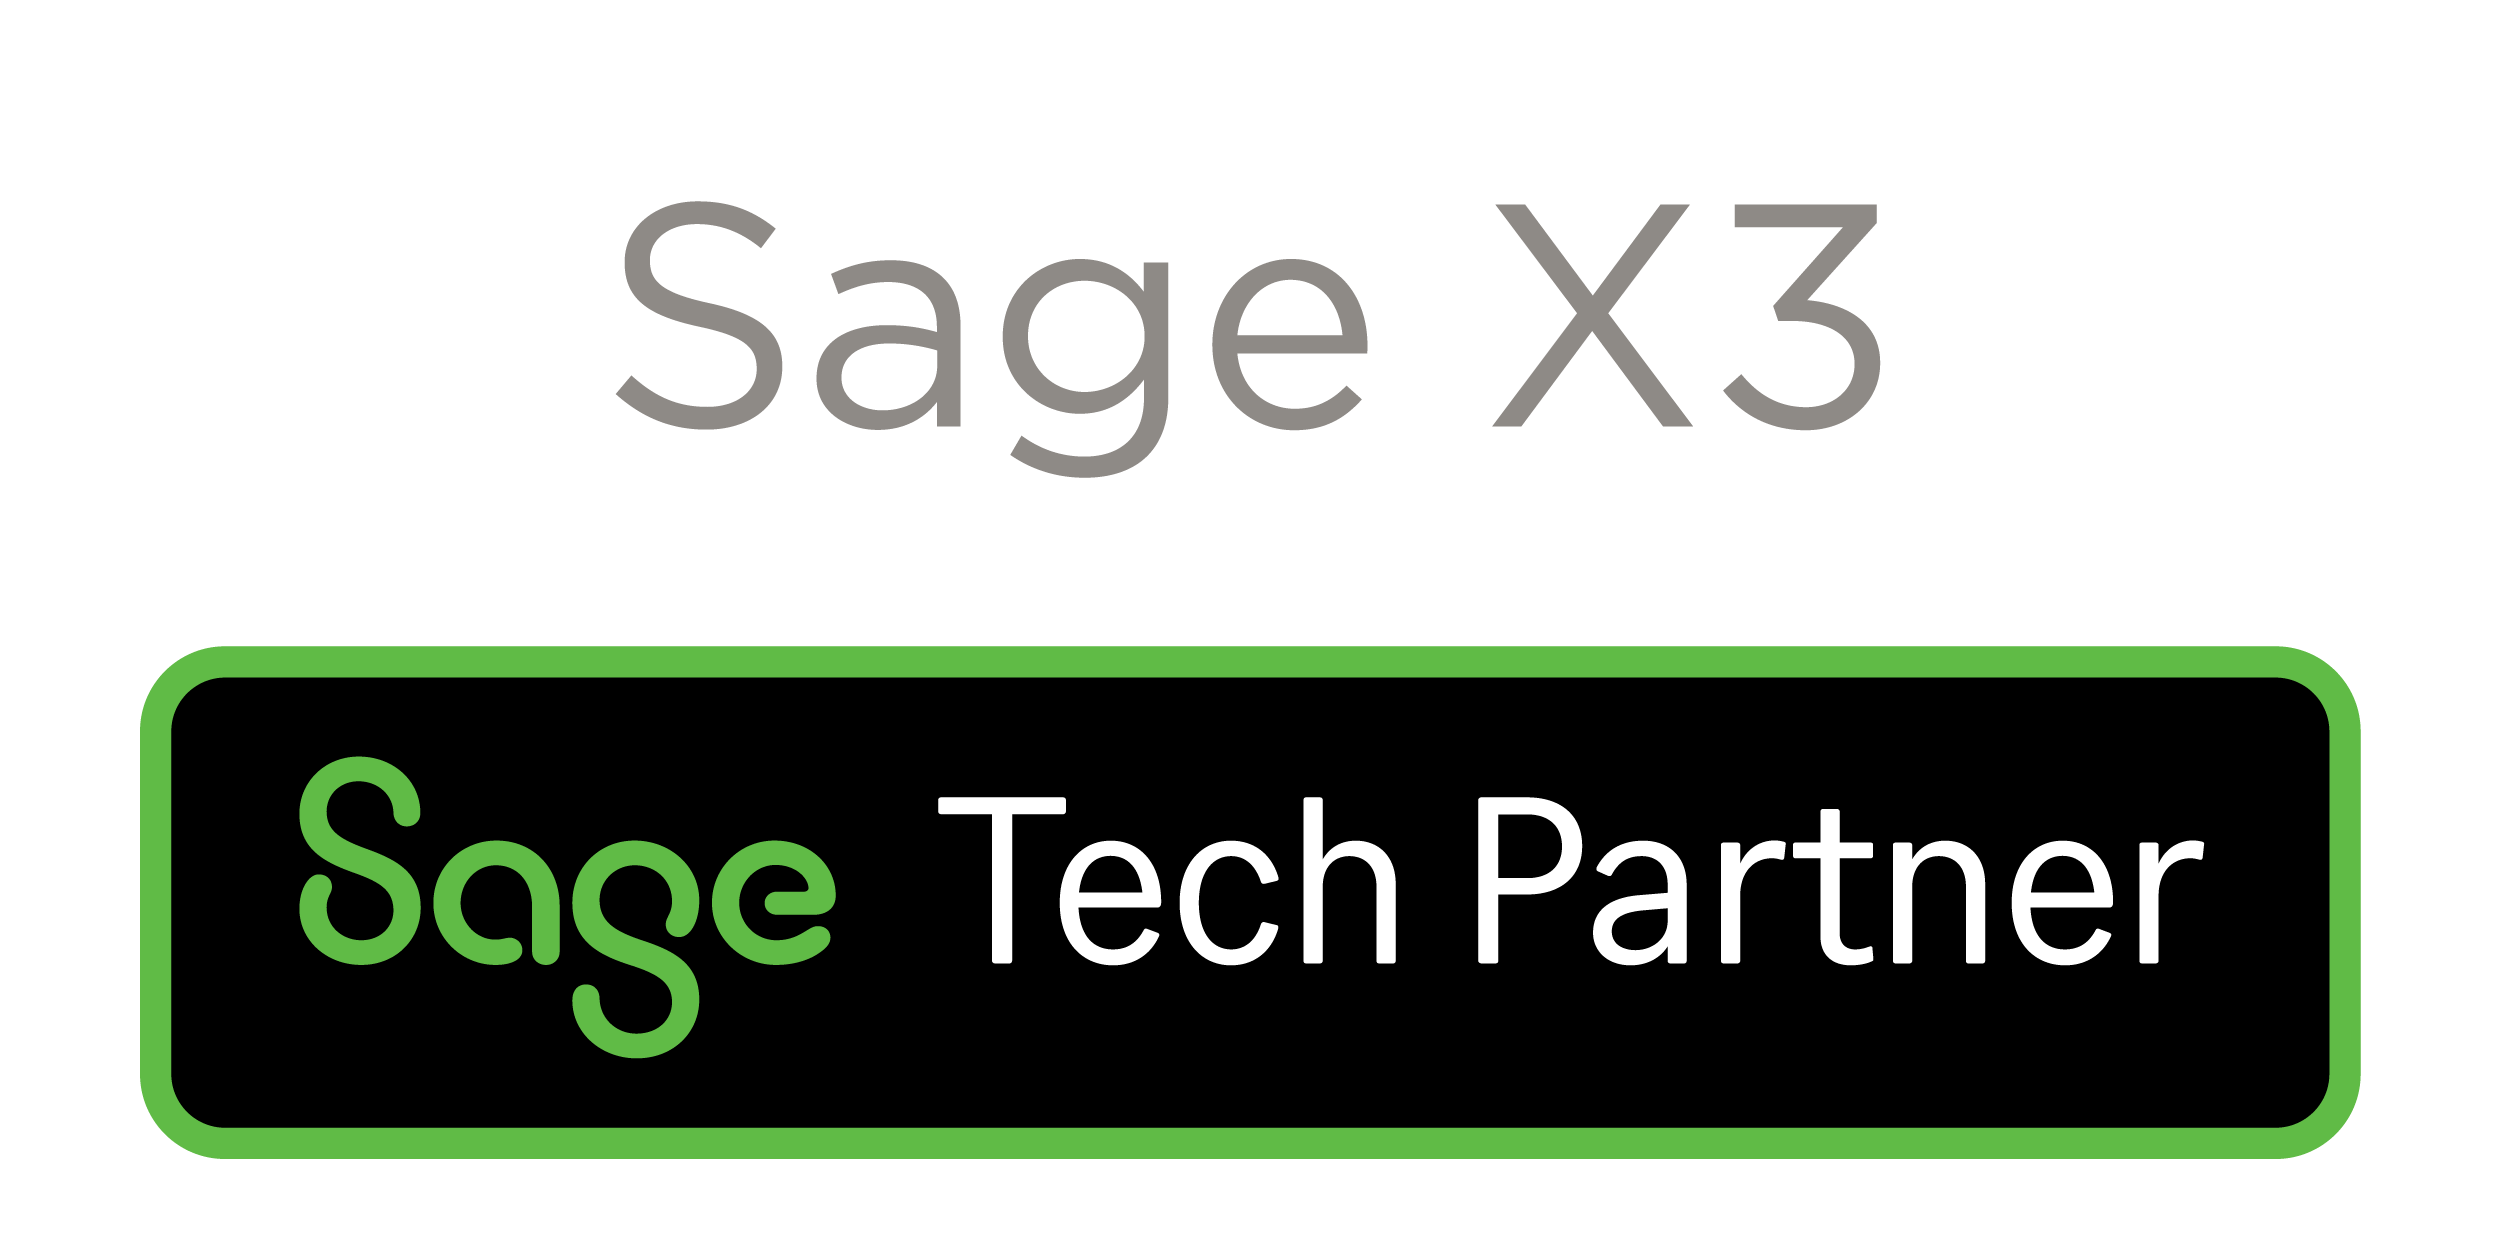 sagex3-logo-2